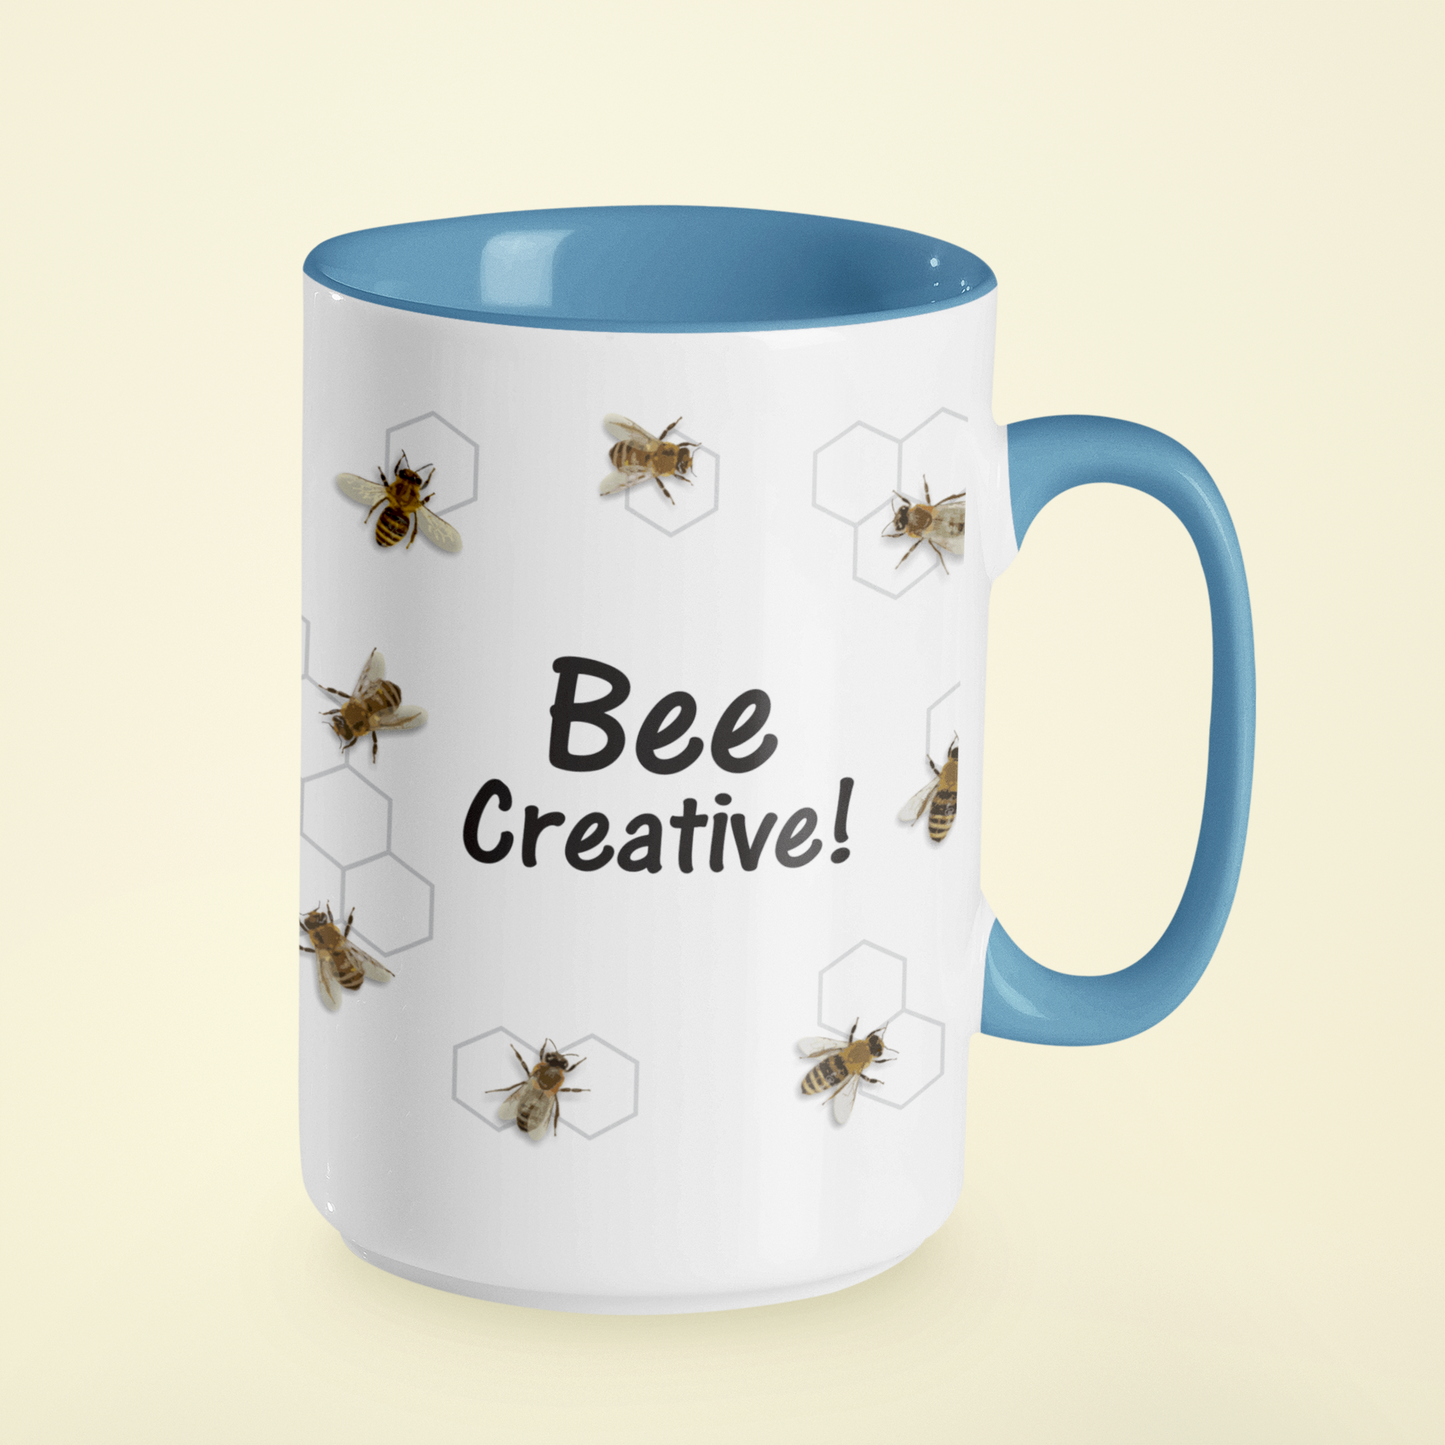 Bee Mug: Bee Creative! • LH